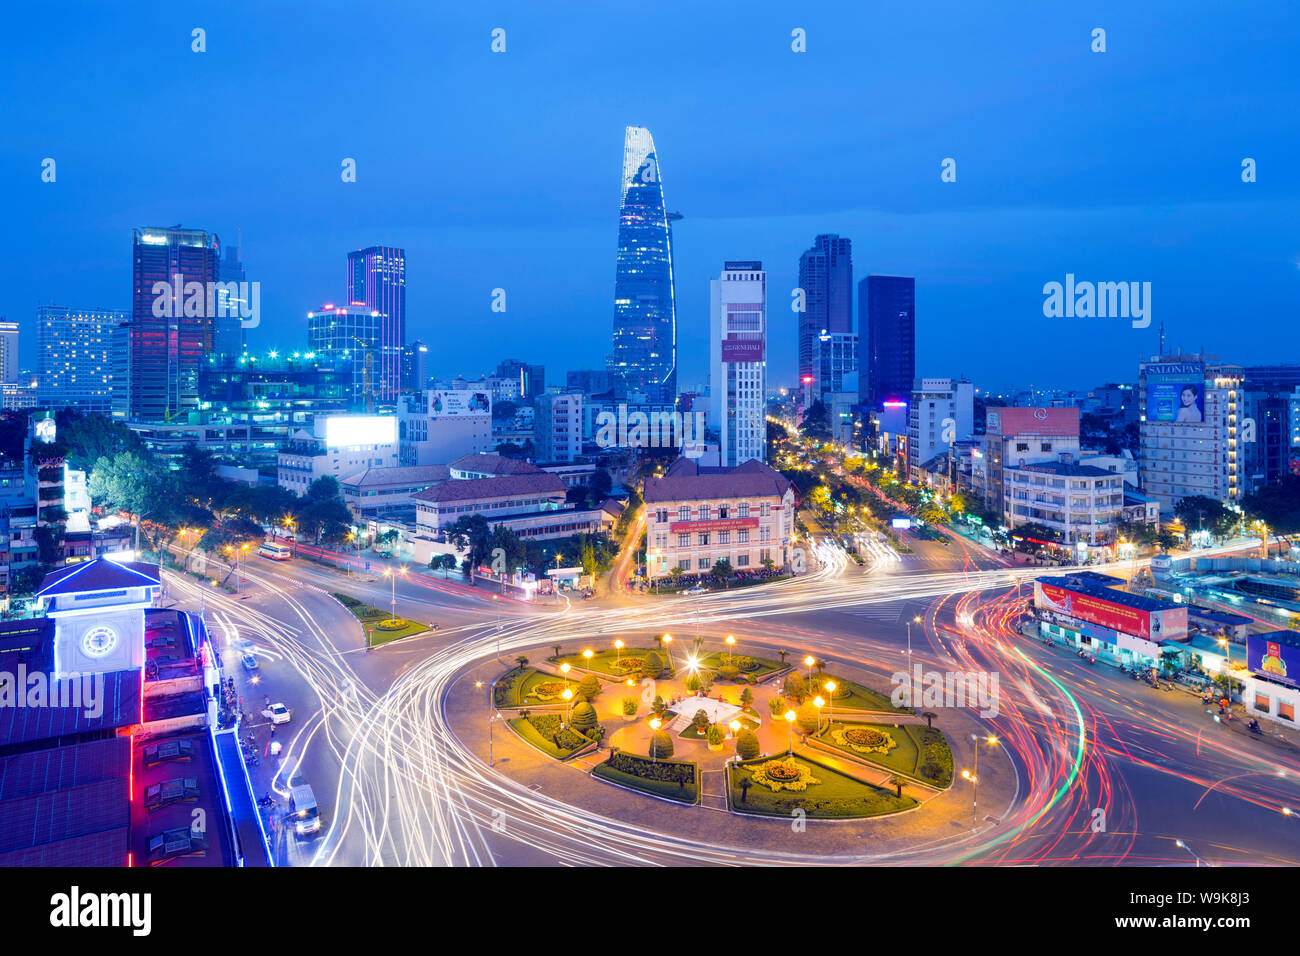 El área de mercado Ben Thanh y Bitexco Financial Tower, Ciudad Ho Chi Minh (Saigón), Vietnam, Indochina, en el sudeste de Asia, Asia Foto de stock